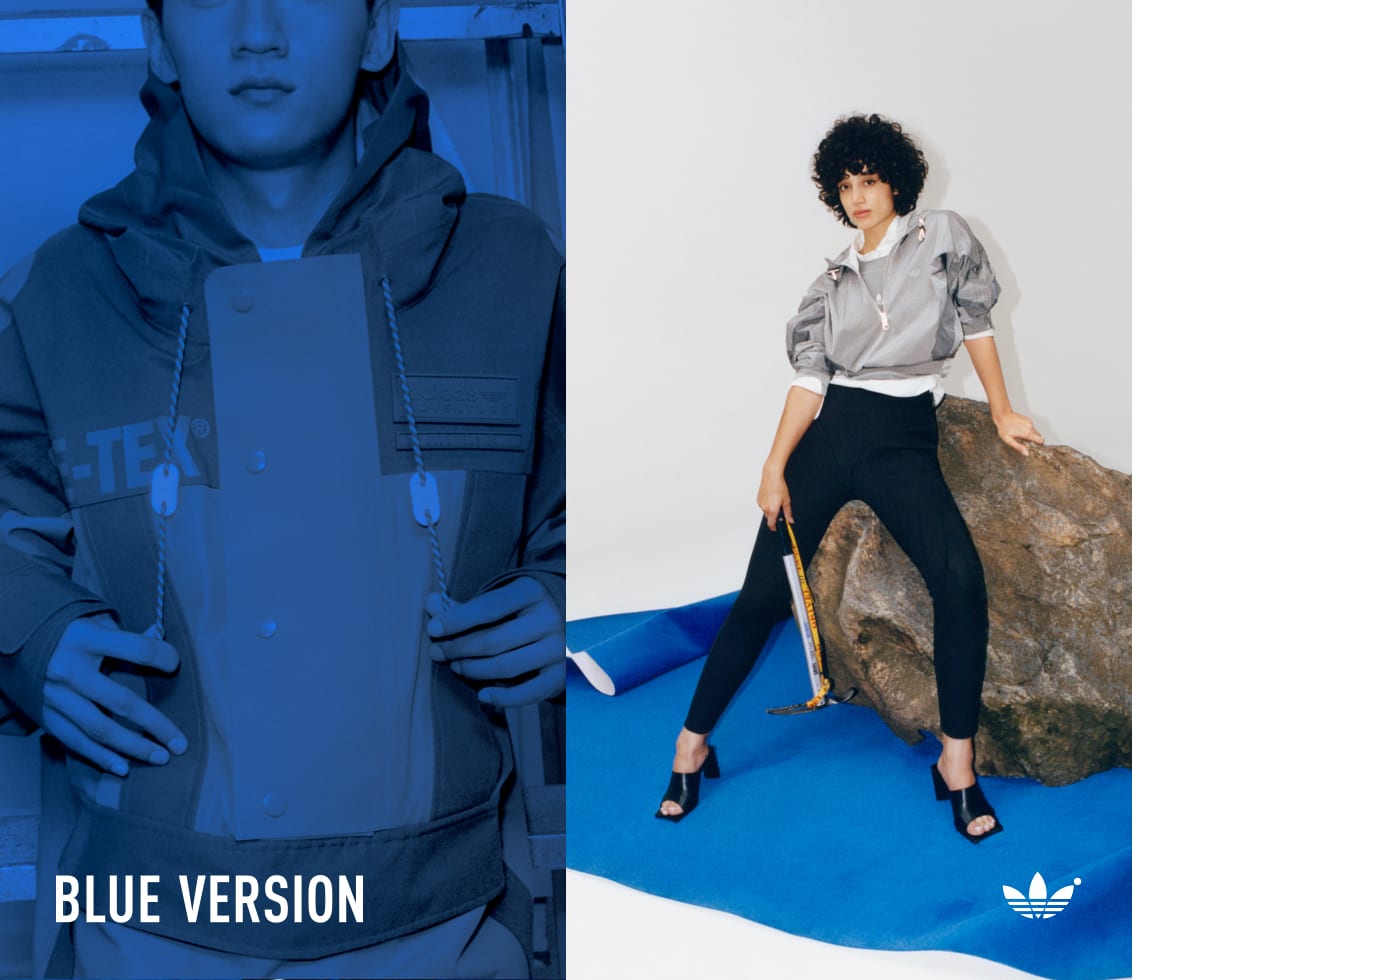 Dos imágenes perpendiculares de dos modelos con prendas de la nueva colección Blue Version.